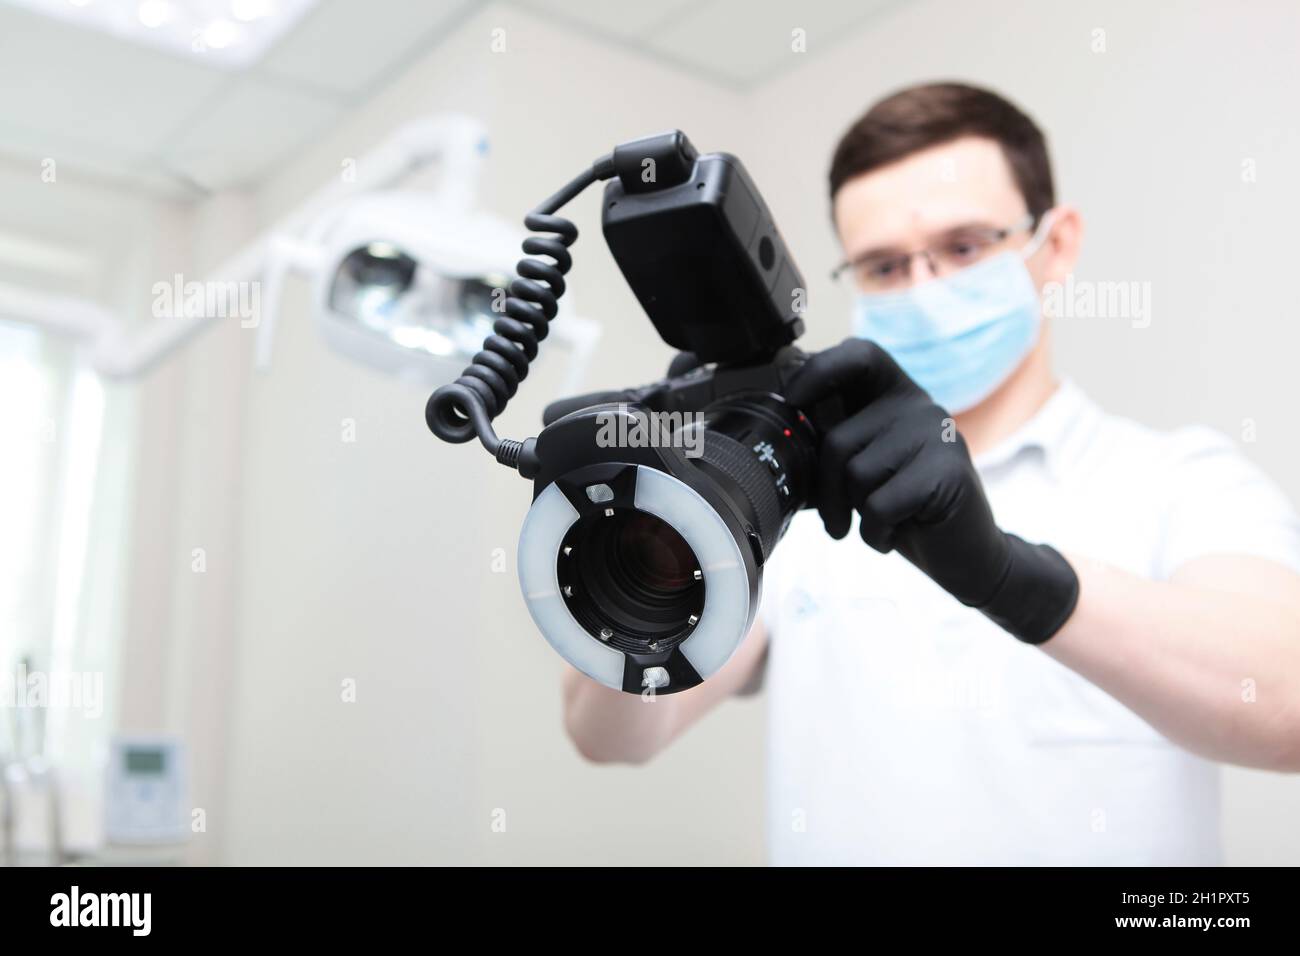 Der Zahnarzt macht während des Termins ein Foto auf der Kamera. Arzt in Schutzmaske außer Fokus. Eine Kamera mit einem Ringblitz in den Händen eines Stockfoto